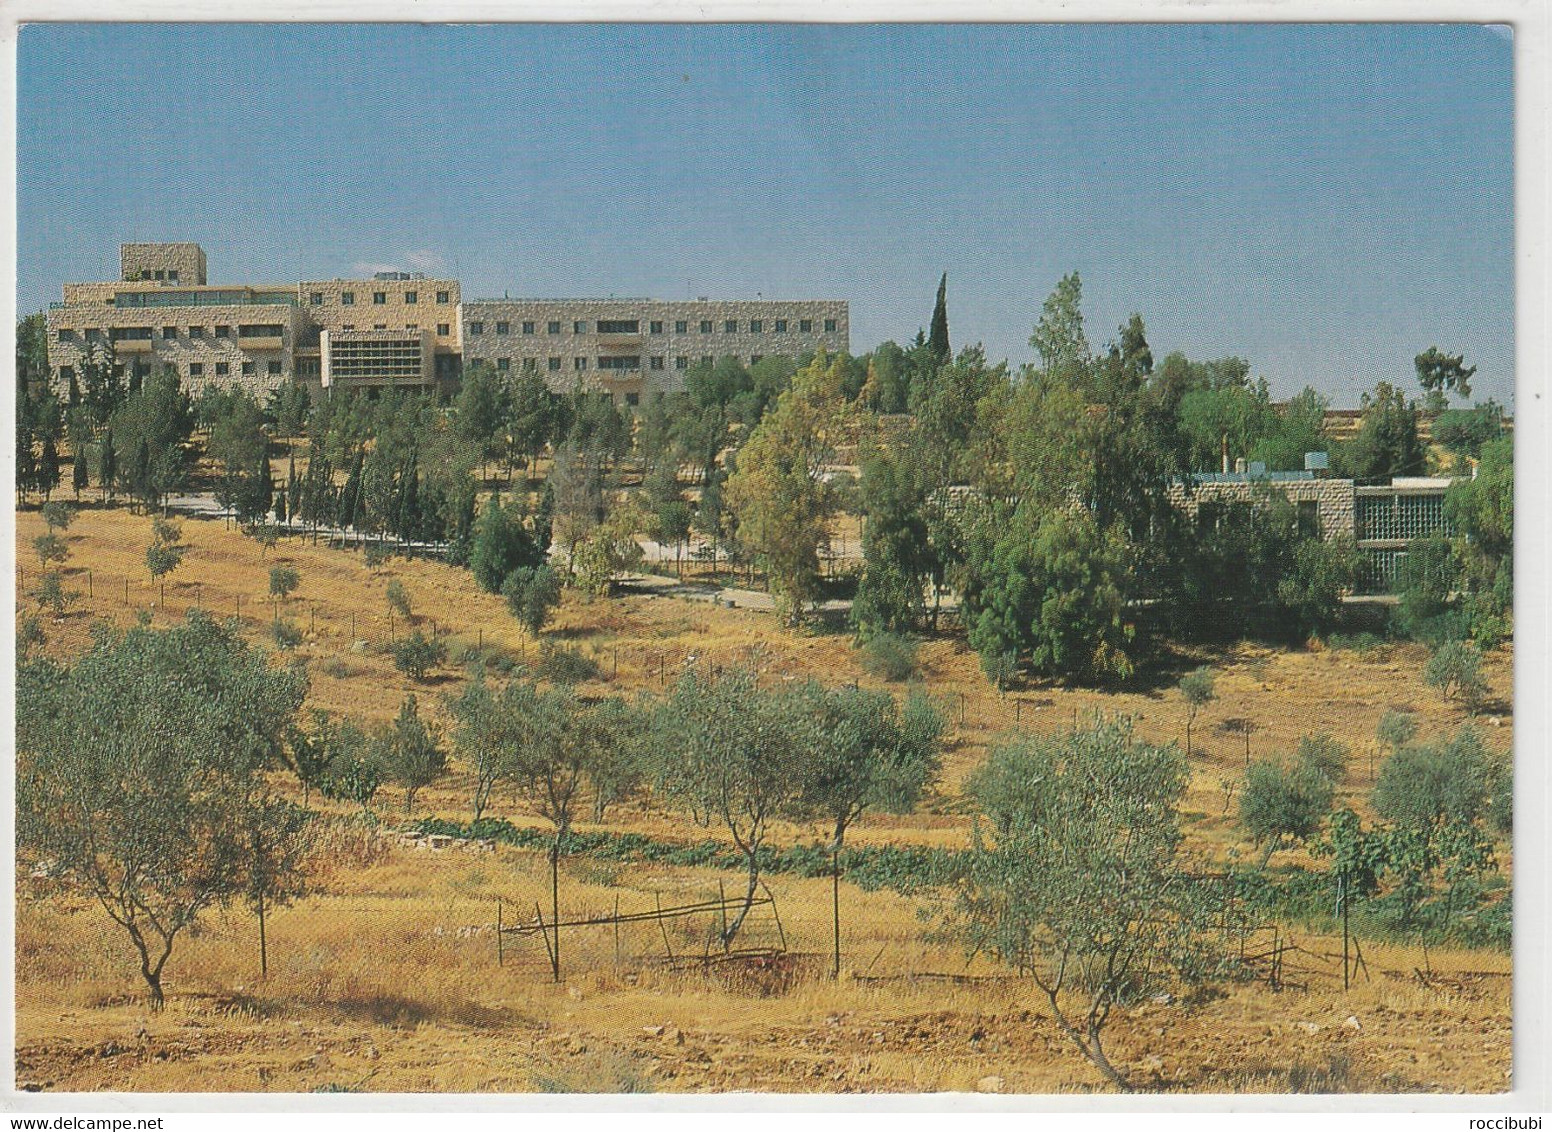 Amman, Deutsche Schule - Jordan